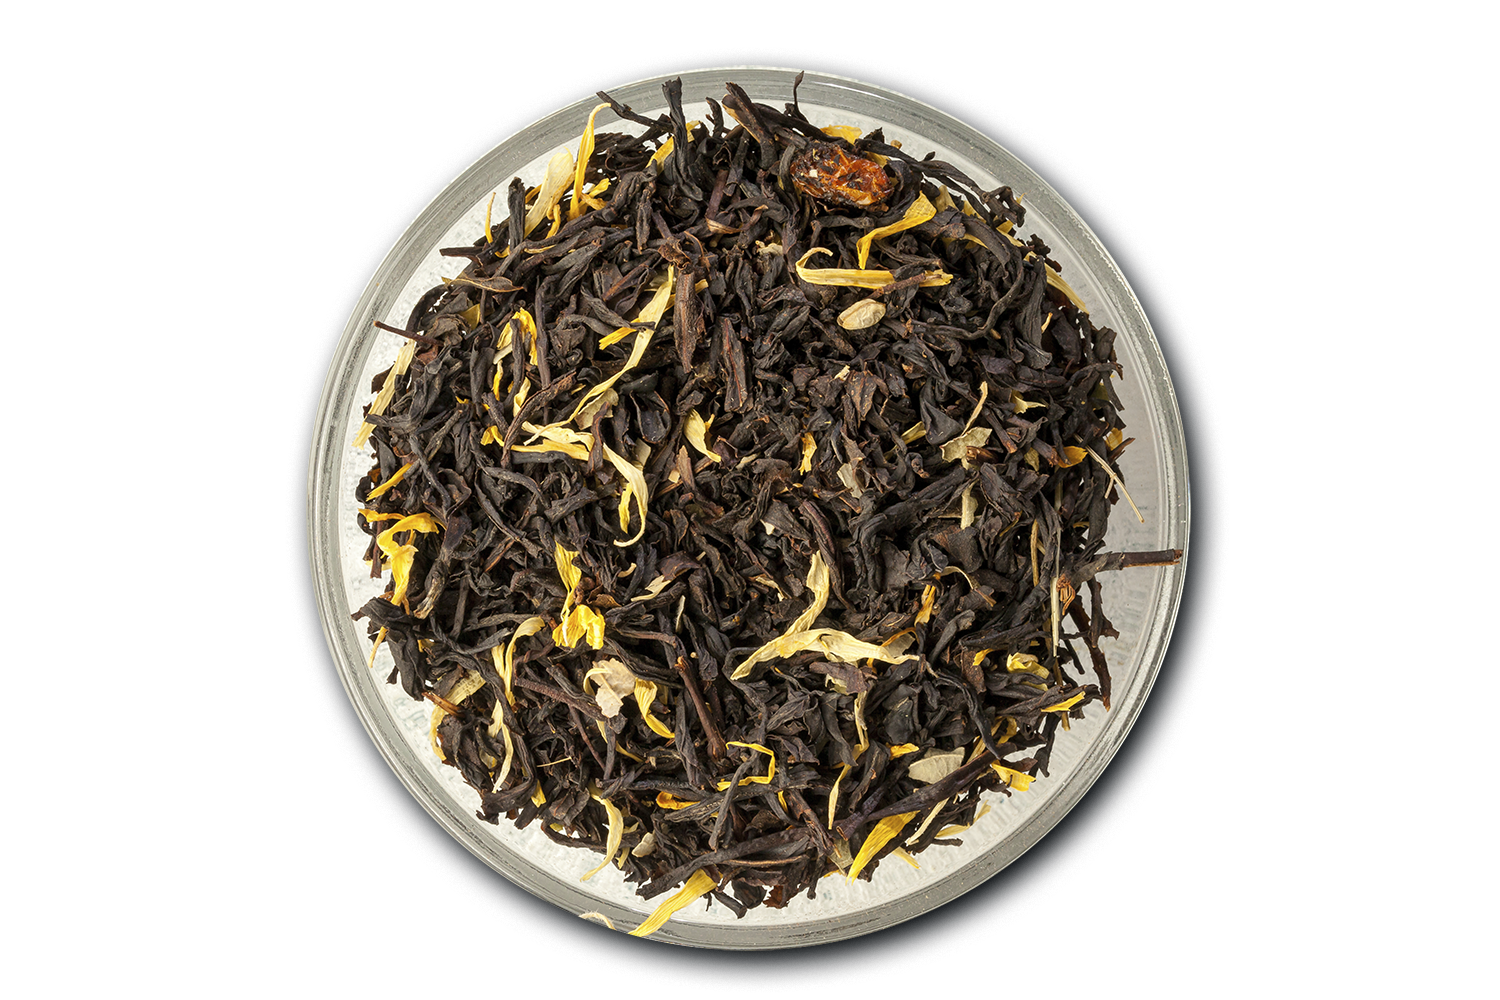 50 г черного чая. Черный чай ПУ Эр "черный дракон" 100пак. Черный чай с облепихой. Тайский черный чай. Чай черный улун Amazon.